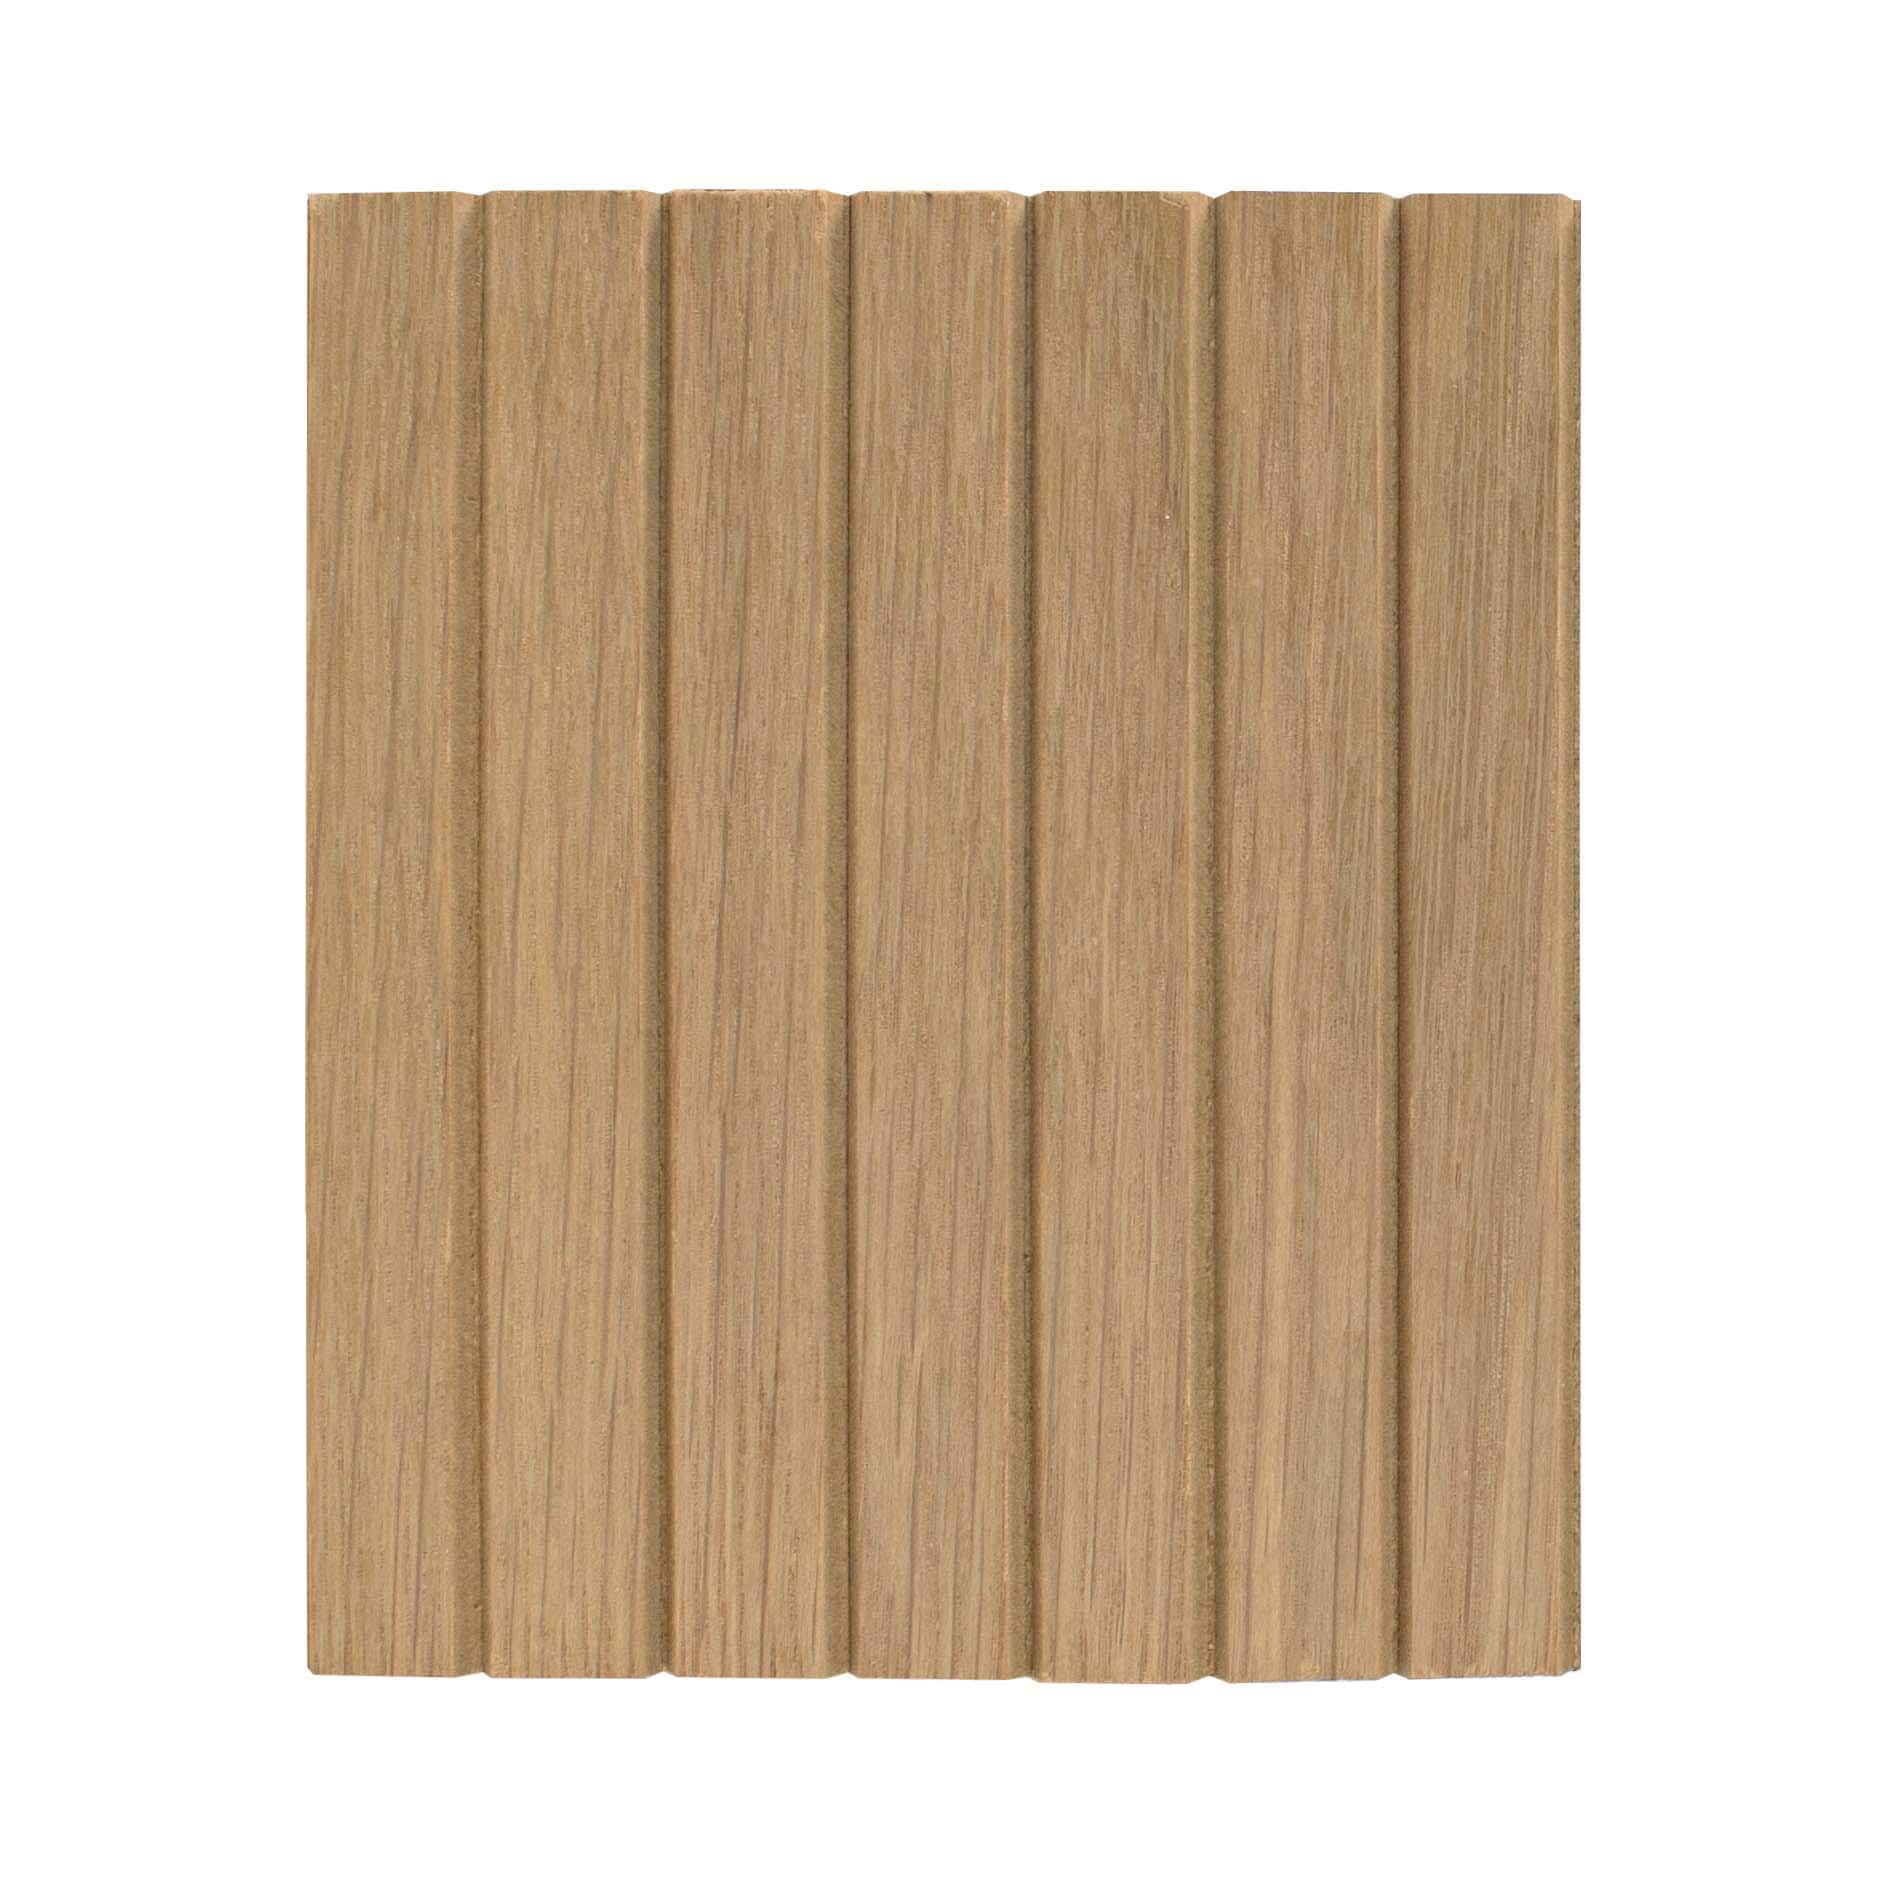 White Oak Solid Wood Slat Wall Panels - For Sale, Buy Online